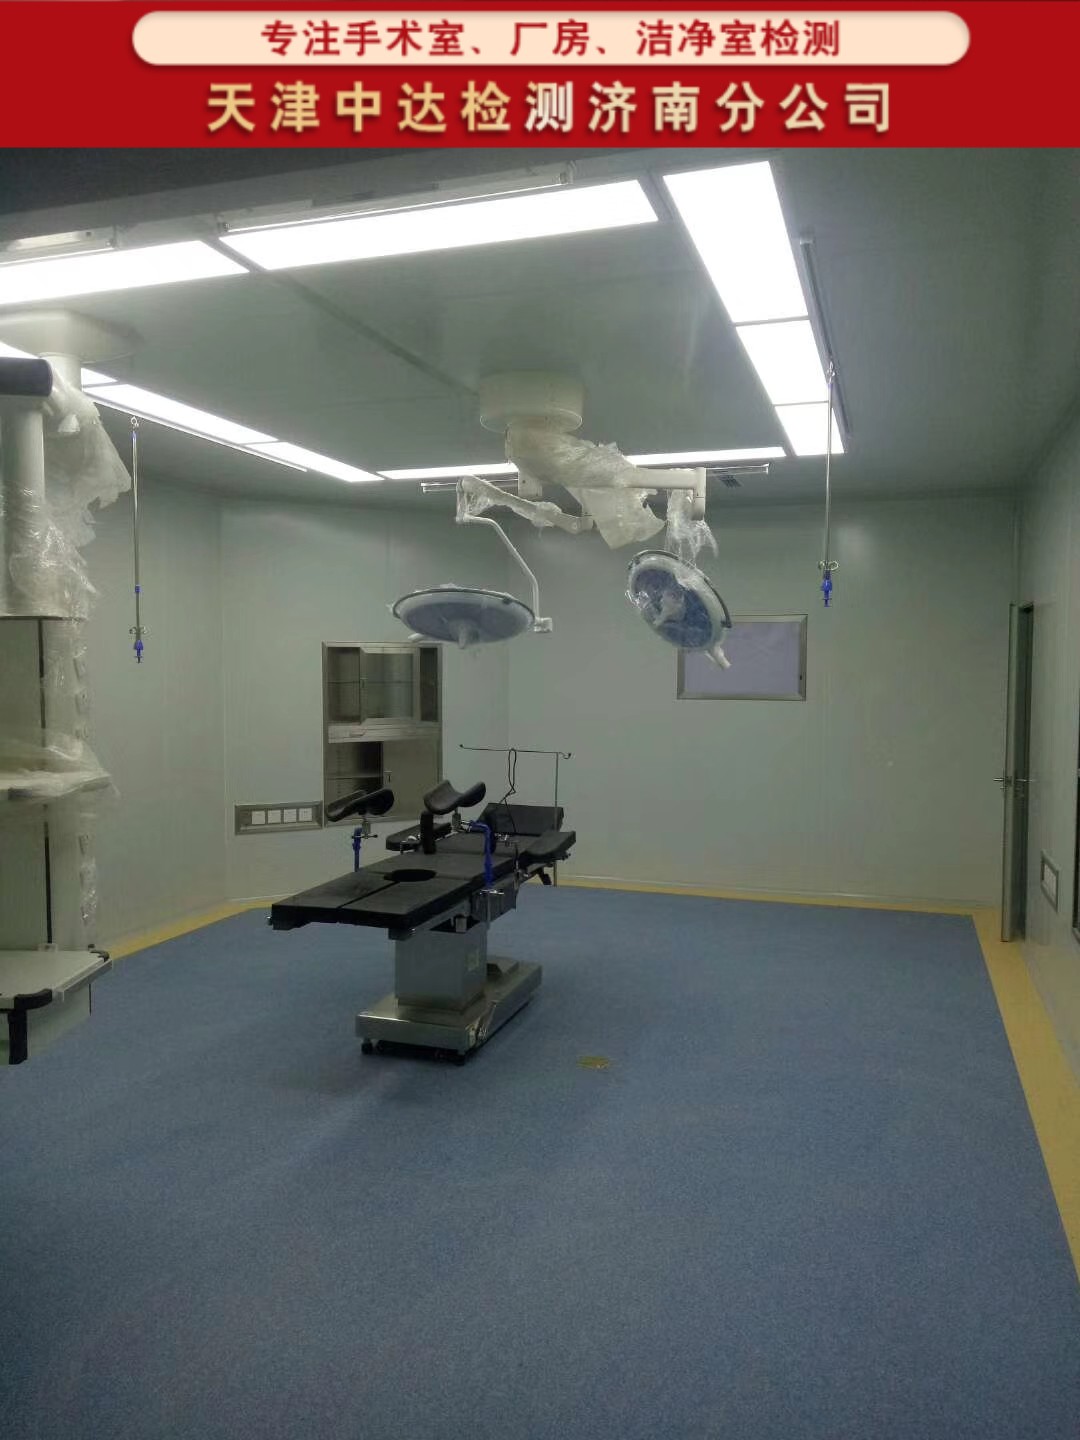 青岛即墨区百级/千级/万级手术室及ICU洁净检测单位-天津中达检测济南分公司